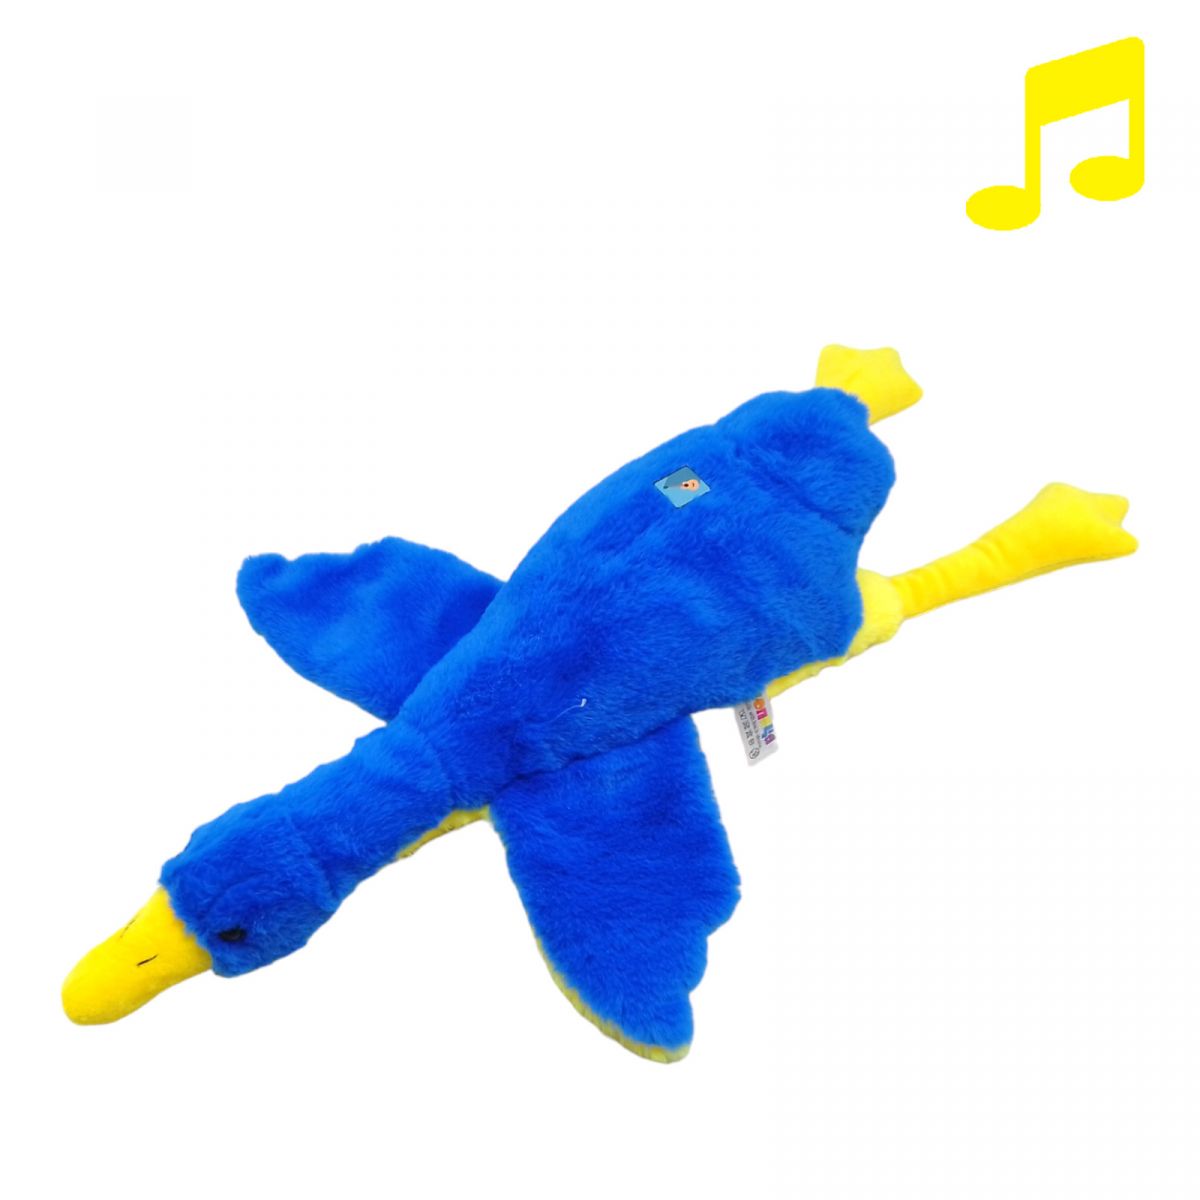 Мягкая игрушка "Гусь-обнимусь", 60 см, патриот, музыкальный, желто-голубой